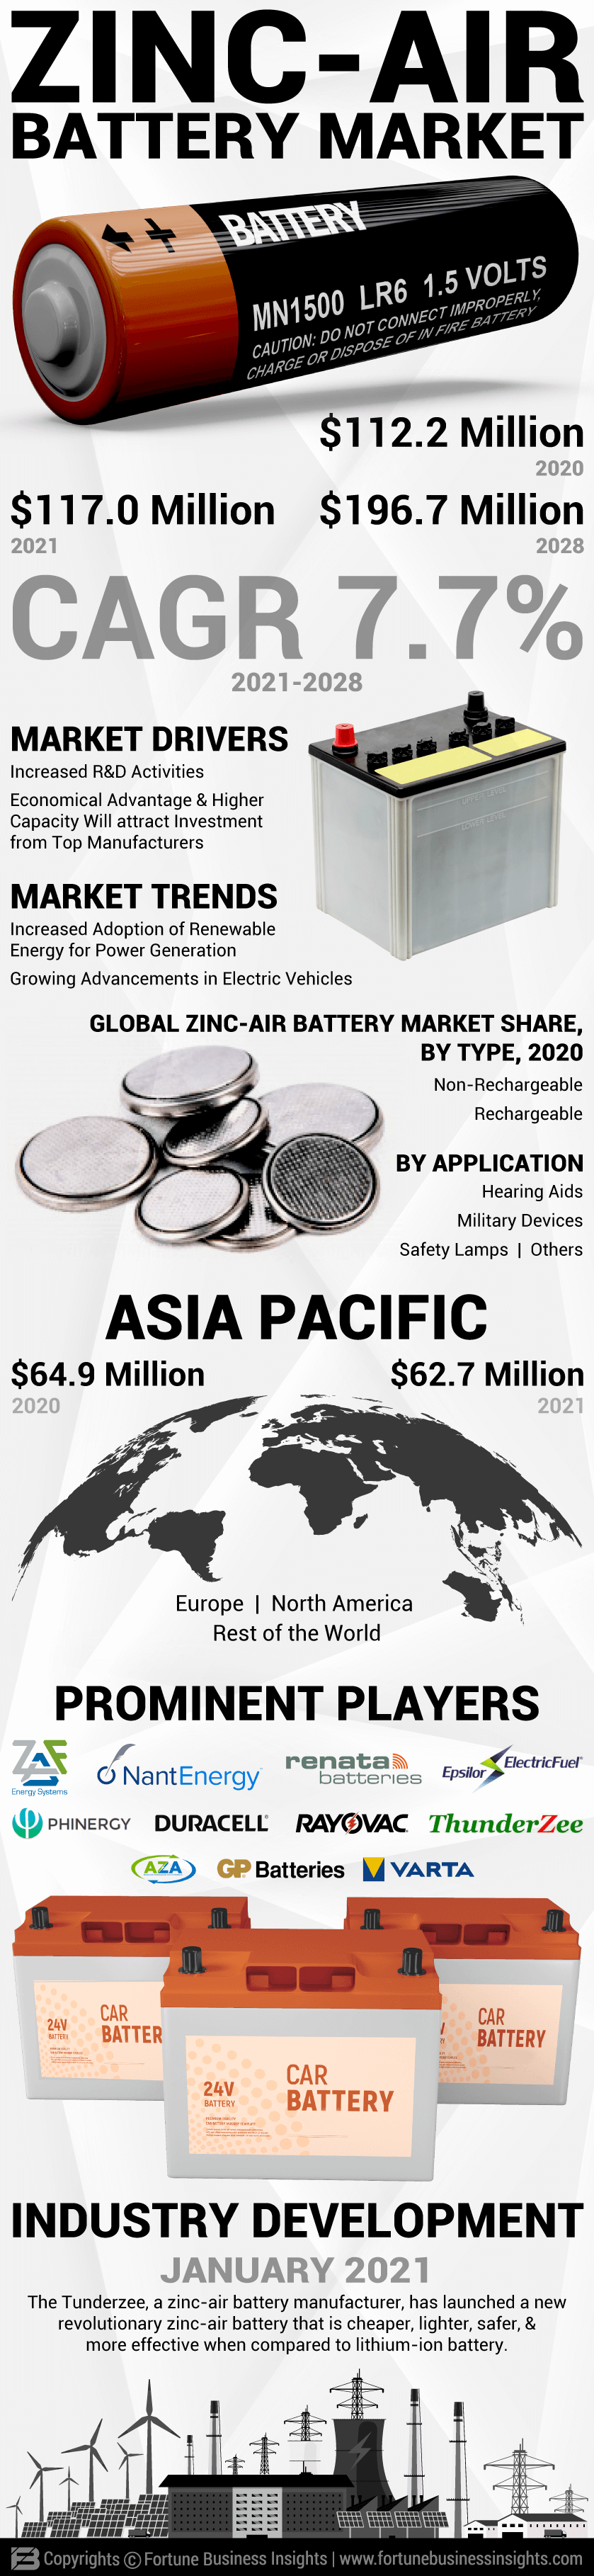 Zinc-Air Battery Market